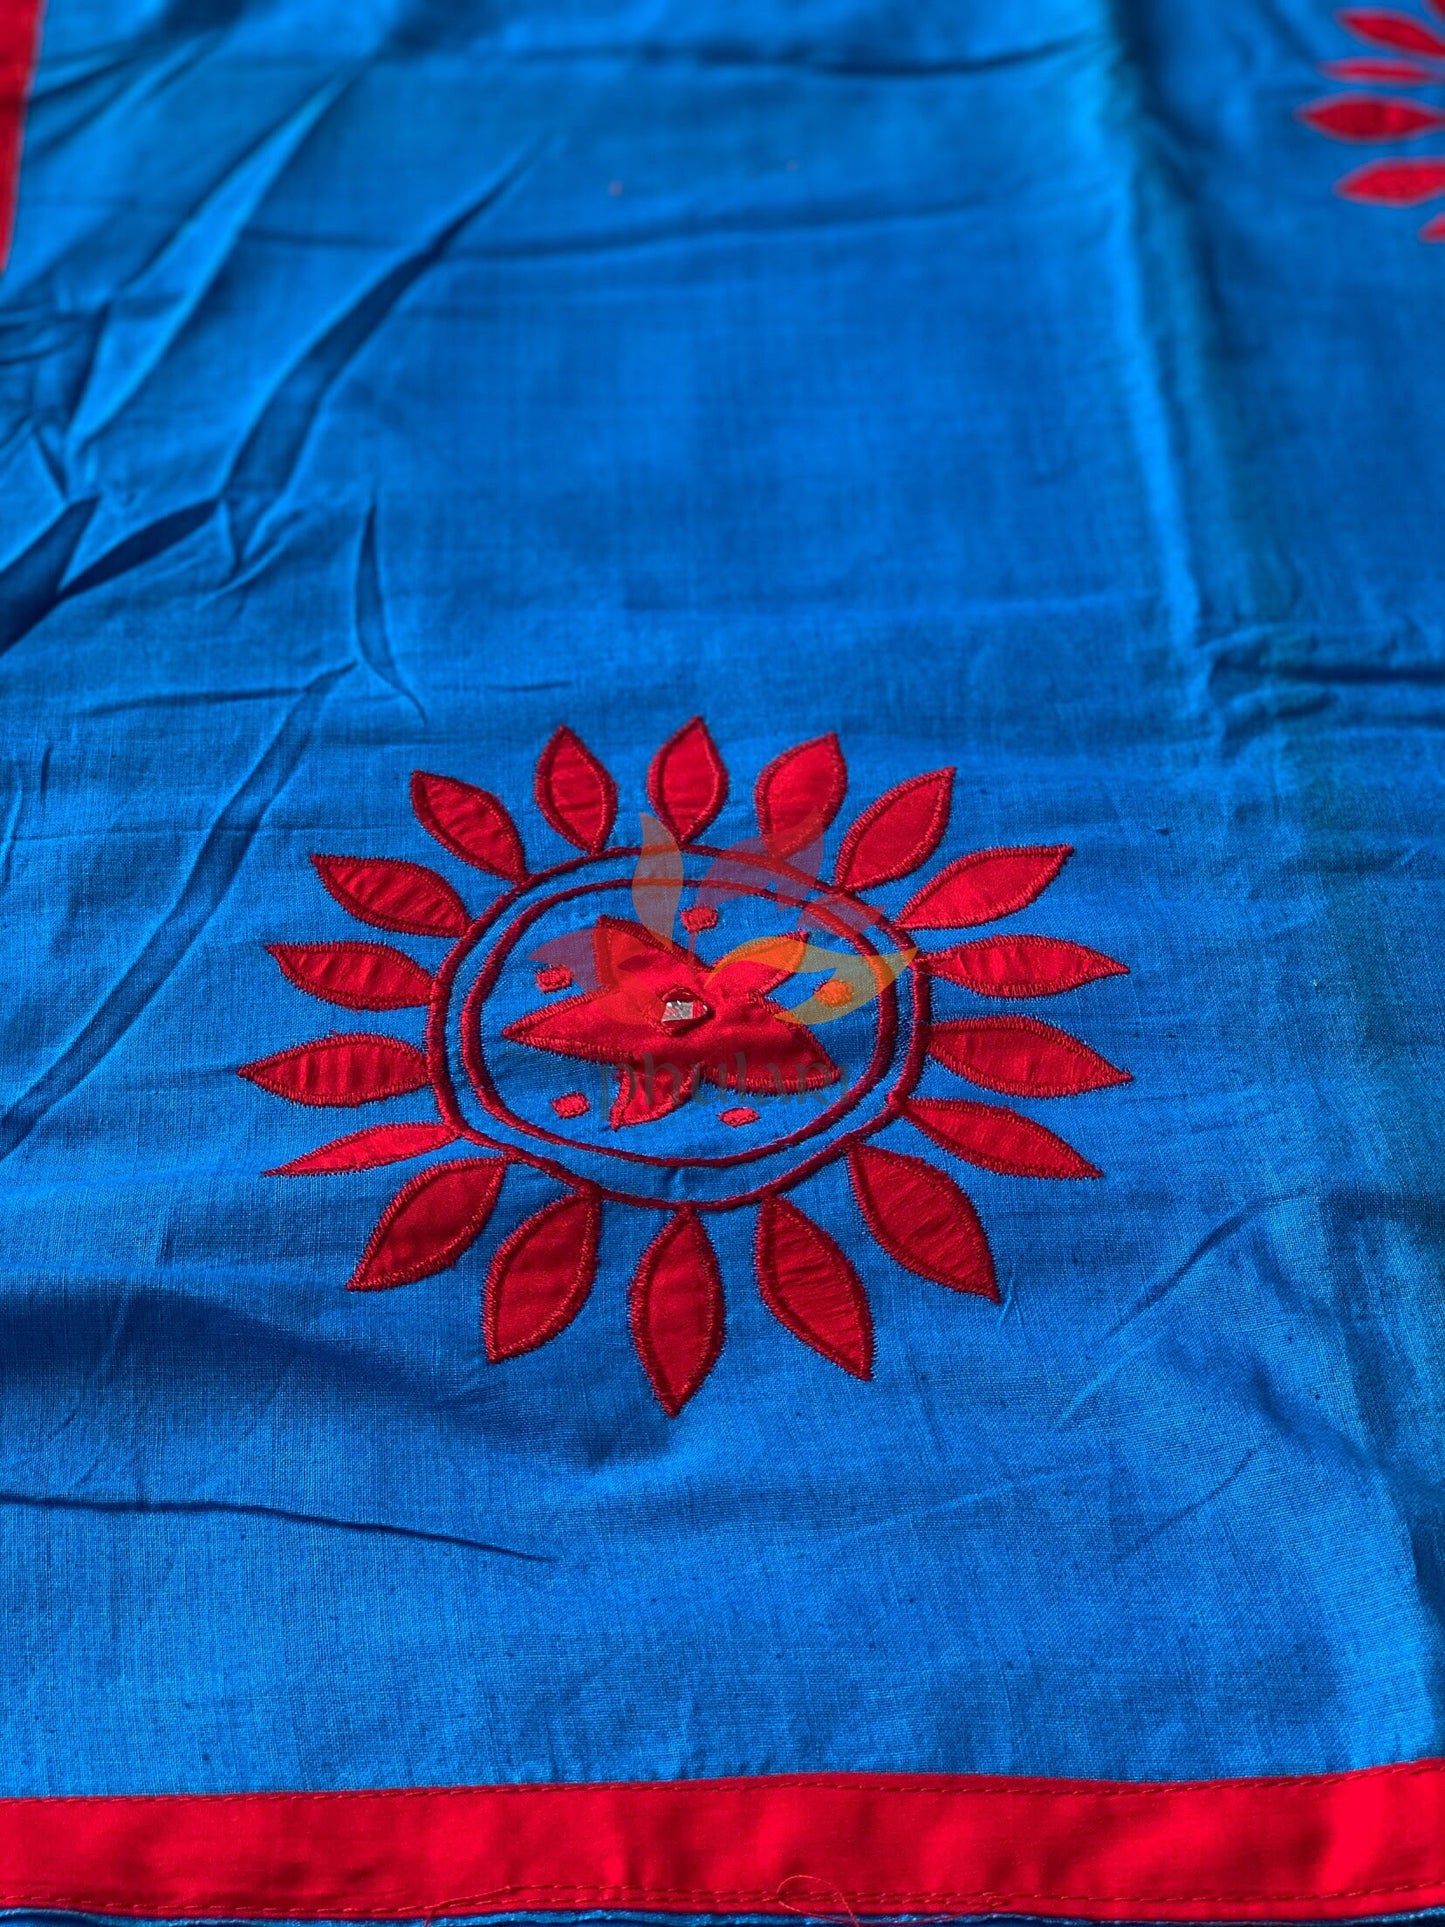 Khesh Saree Appliqué Work Cotton Floral Patch - Blue - Phulari 